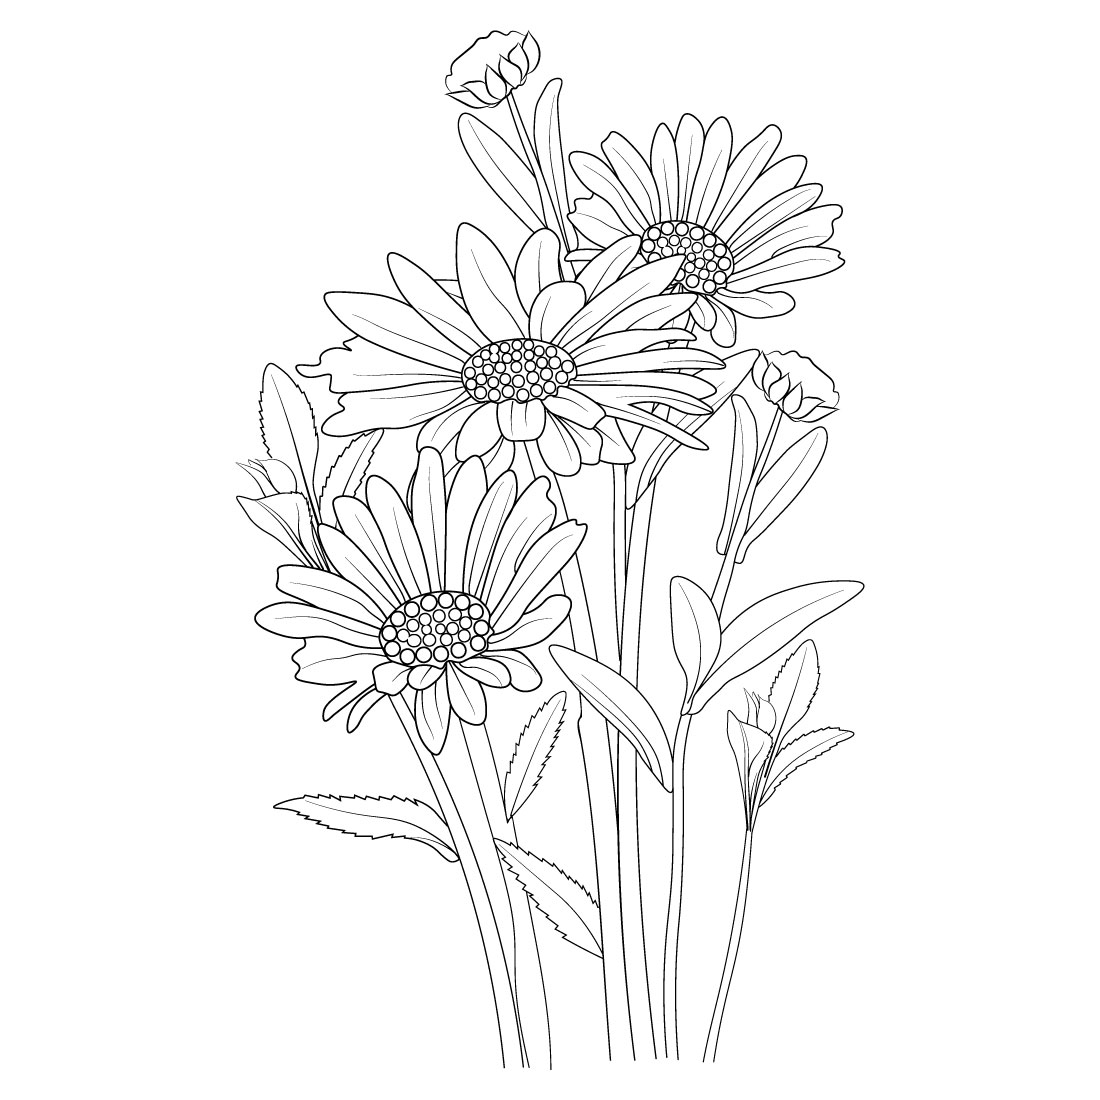 daisy flower clip art black white